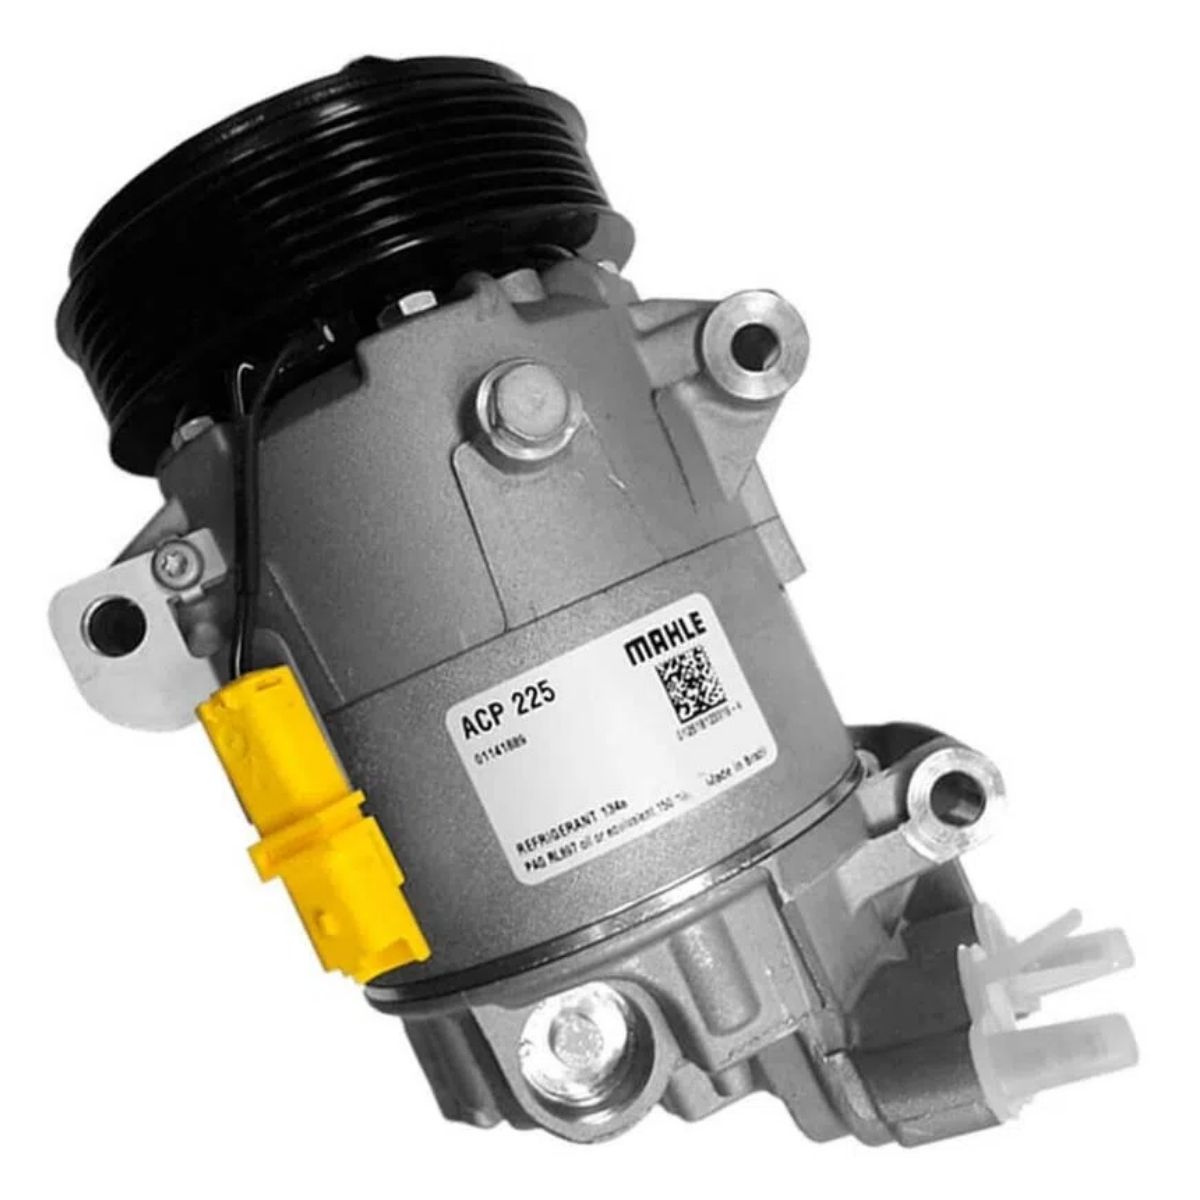 Compressor A/C - 206 2006 a 2010 / 207 2008 a 2011 / C3 2003 a 2016 / HOGGAR 2010 a 2015 - ACP 225